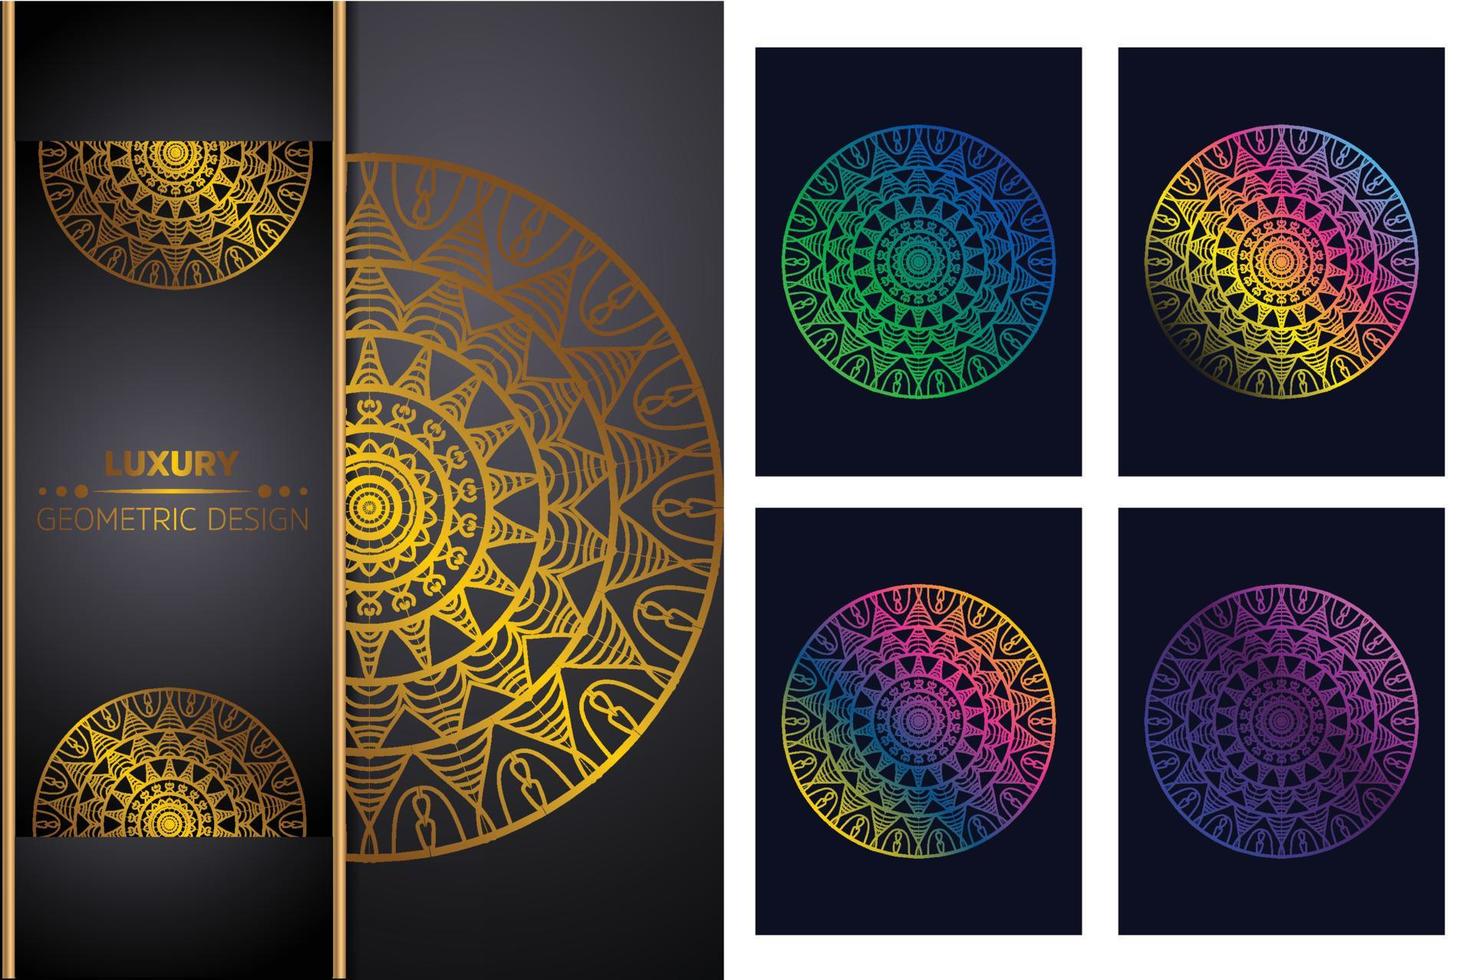 Luxuriöser dekorativer Mandala-Design-Hintergrund Mandala-Muster-Malbuch-Kunst-Tapeten-Design, Fliesenmuster, Grußkarte, Aufkleber, Spitze und Tätowierung. Dekoration für die Innenarchitektur vektor